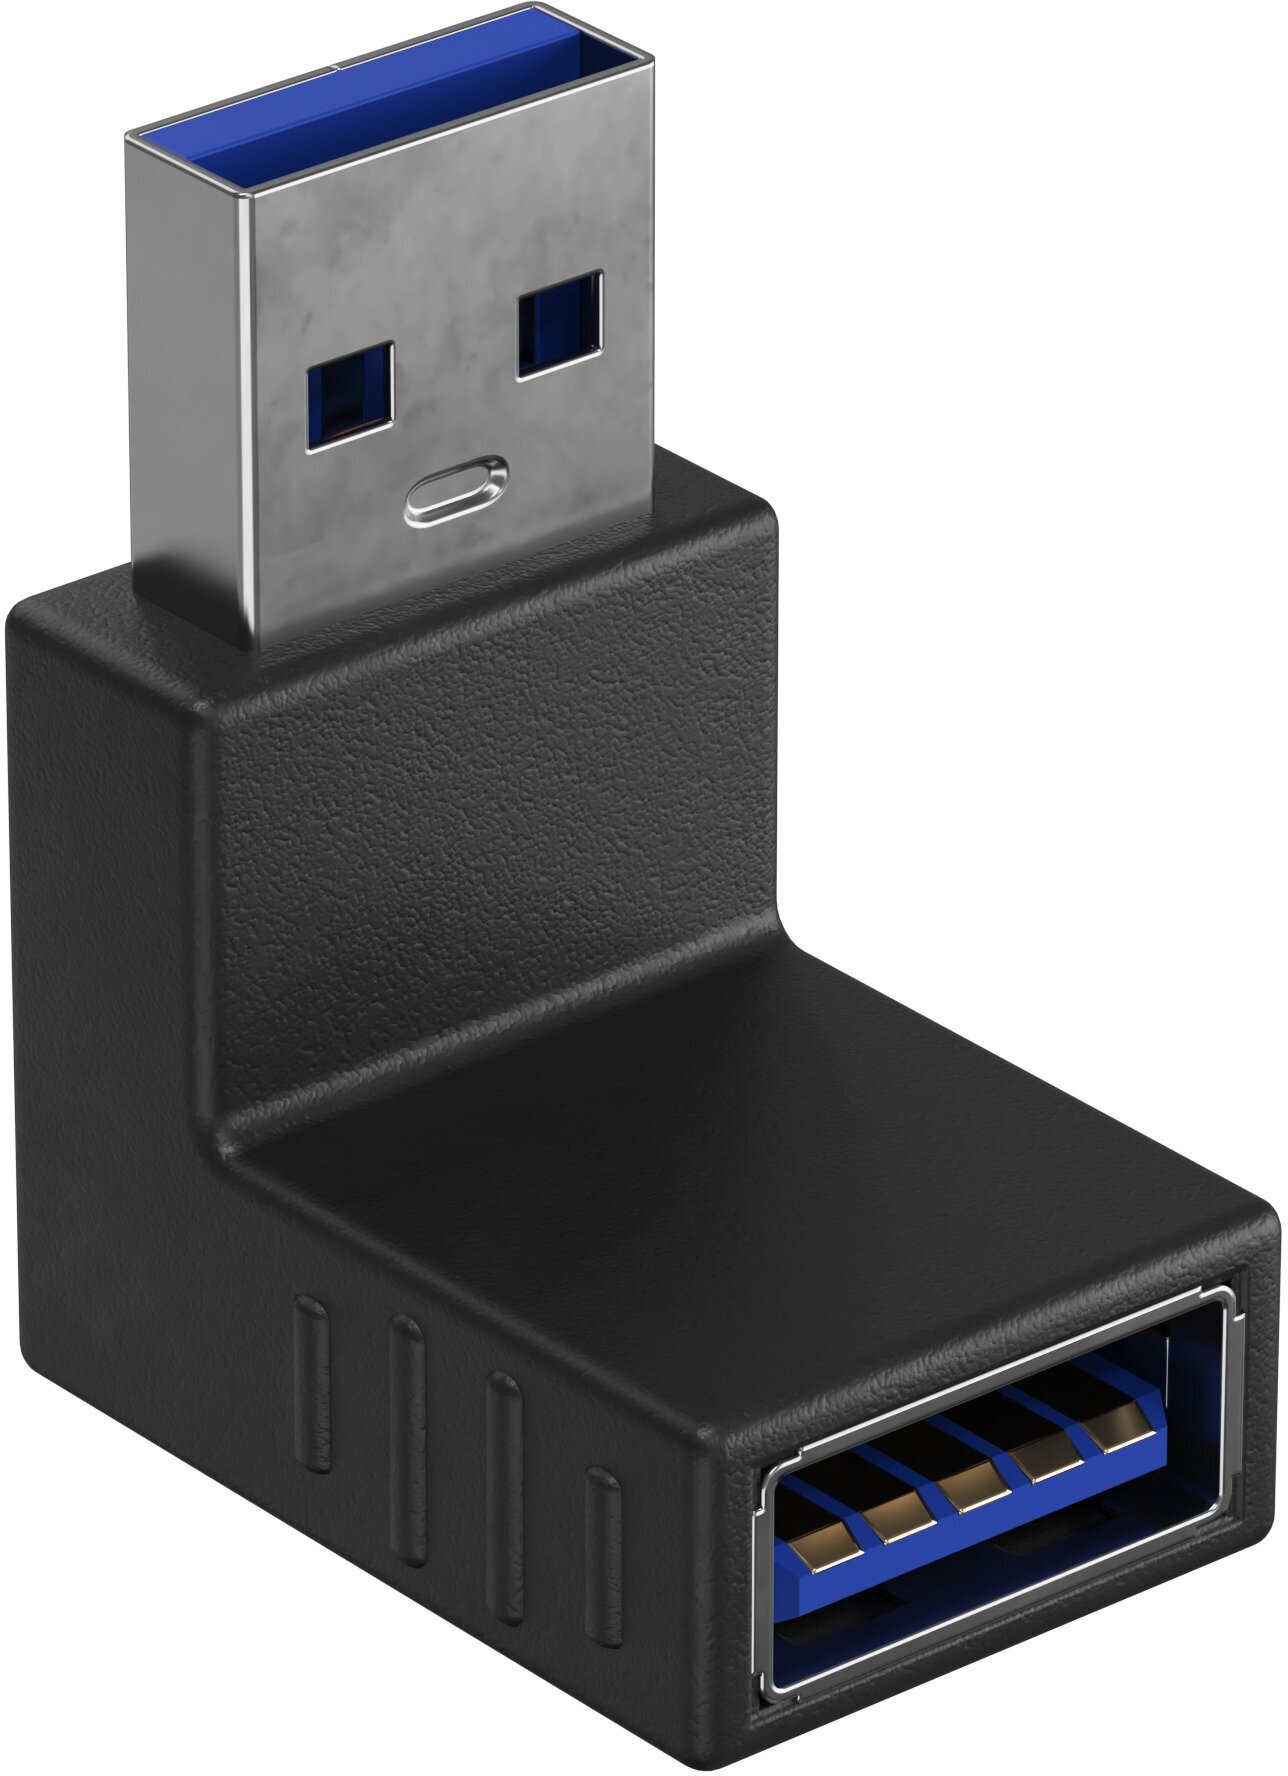 Адаптер-переходник GSMIN RT-51 (угловой 90°) USB 3.0 (F) - USB 3.0 (M) (Черный)